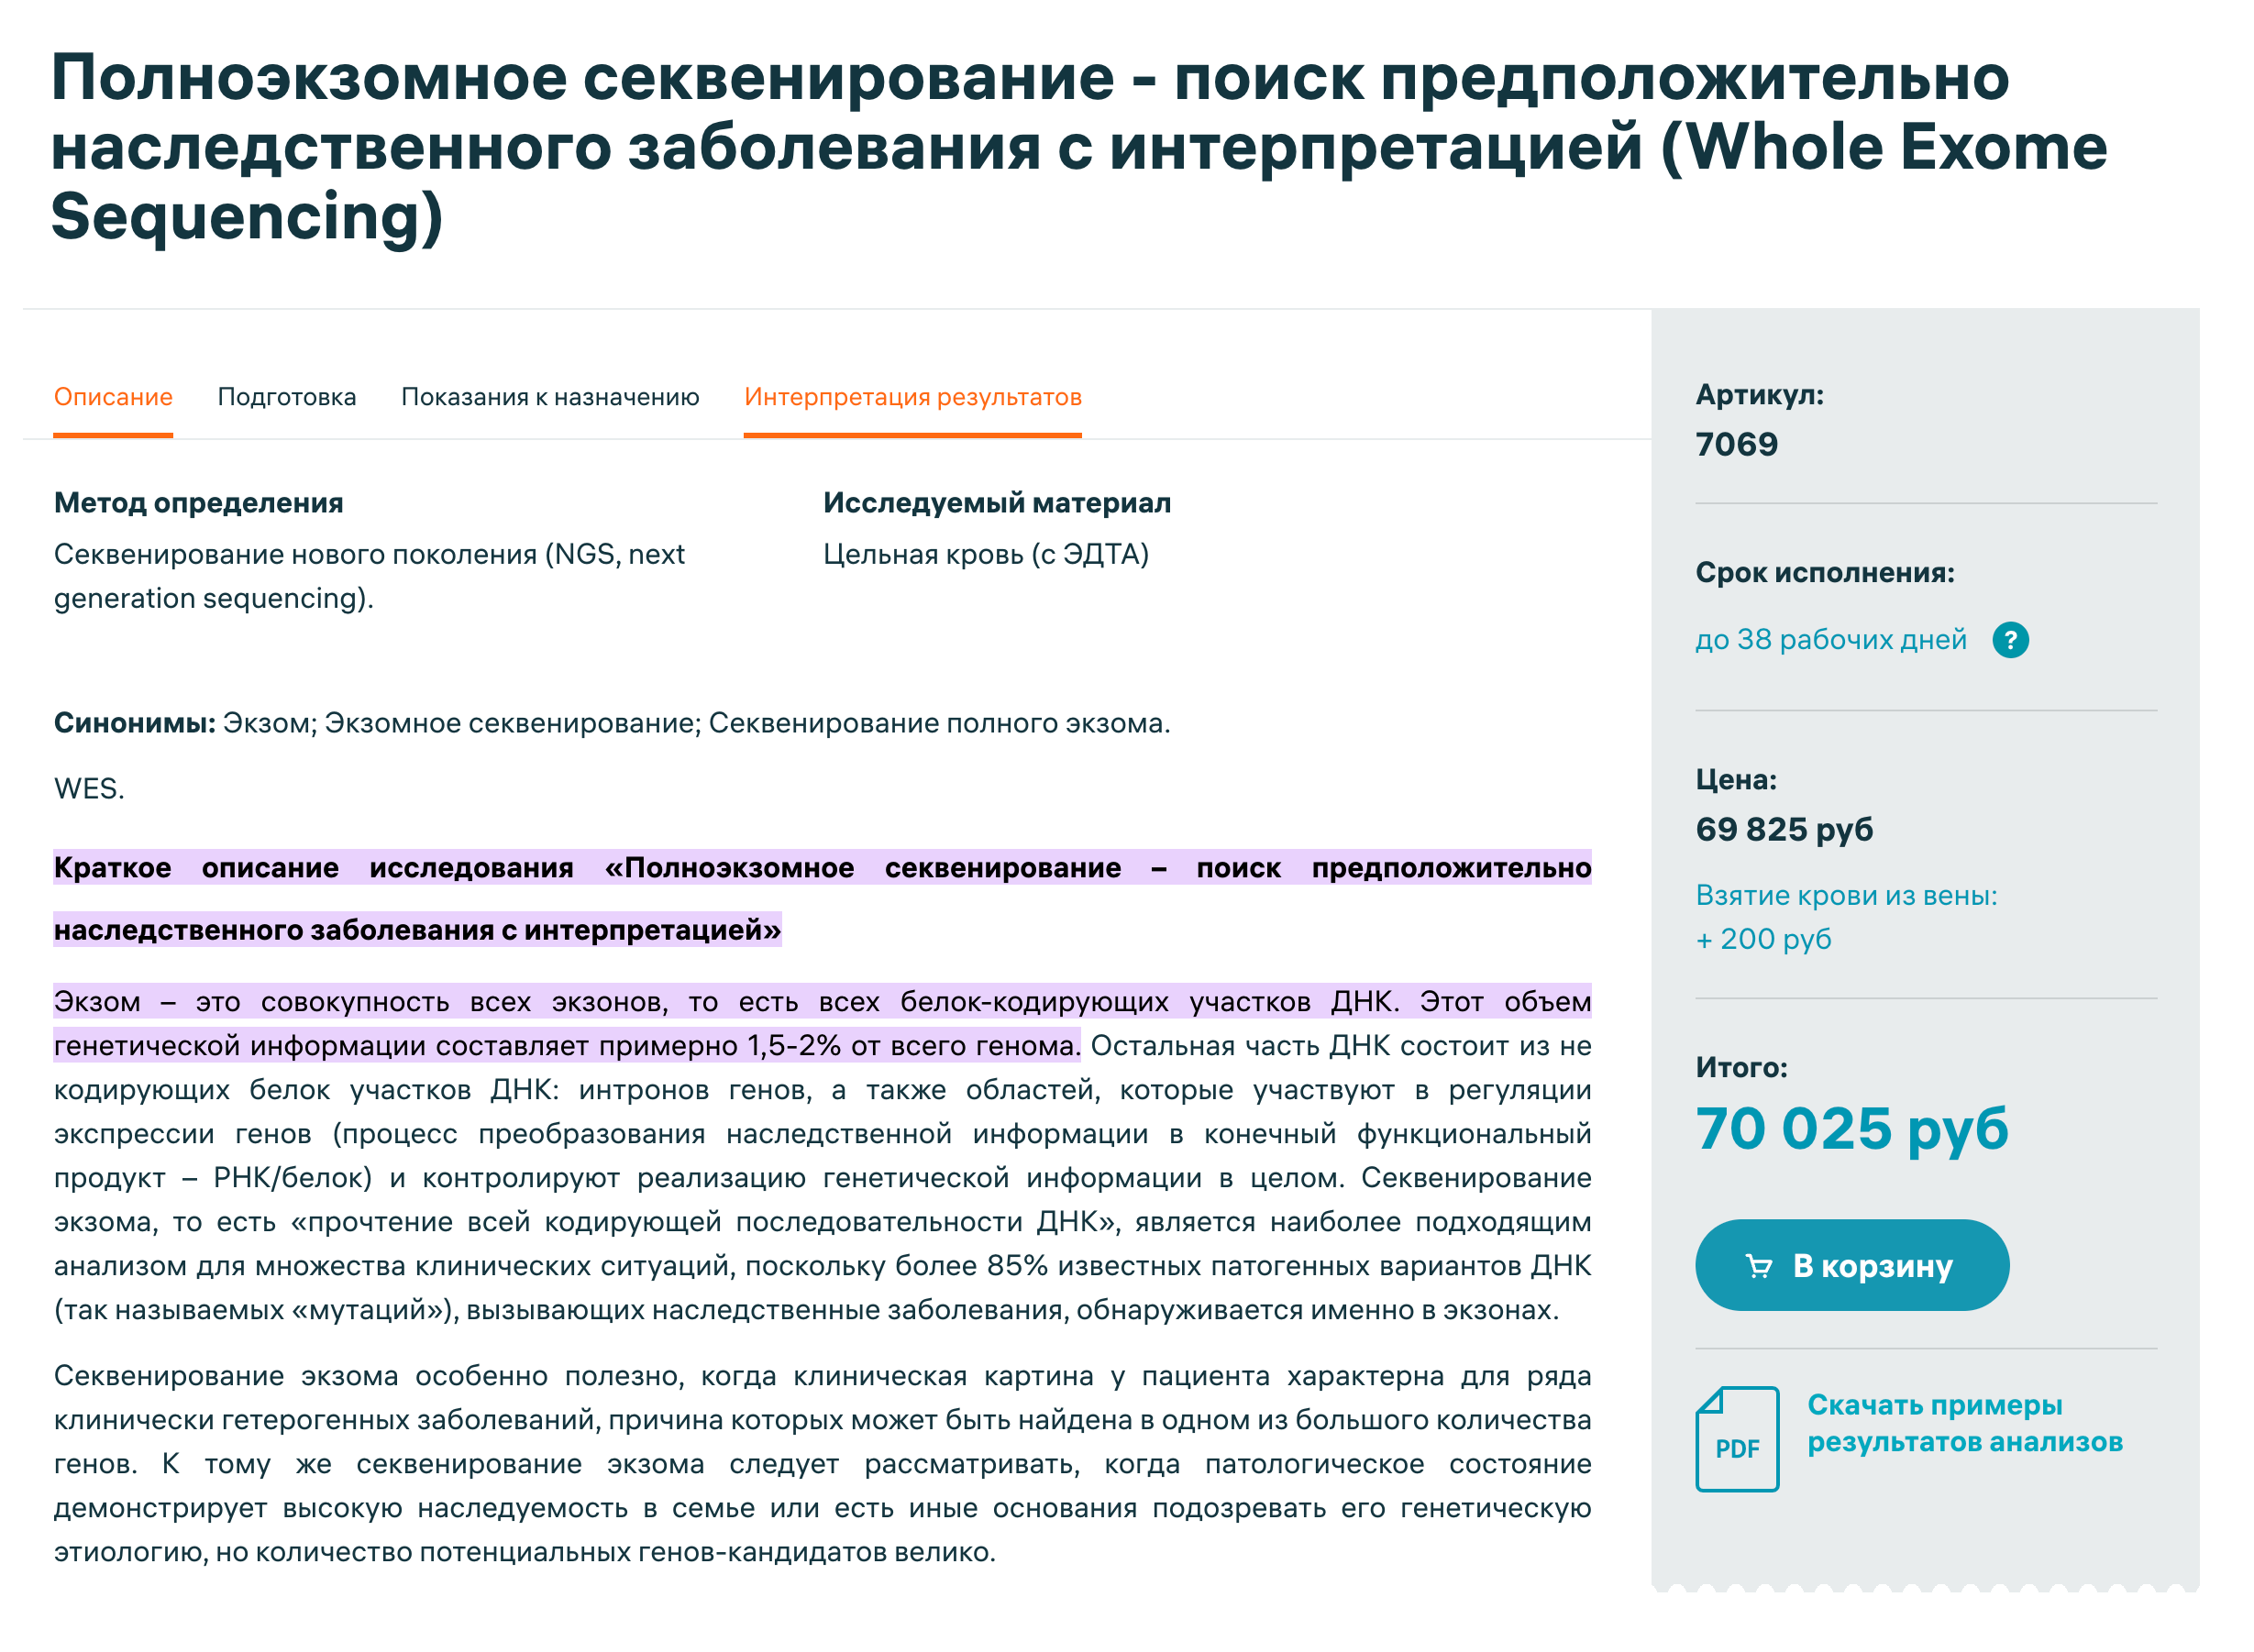 Полноэкзомное секвенирование стоит около 70 000 ₽. Источник: invitro.ru